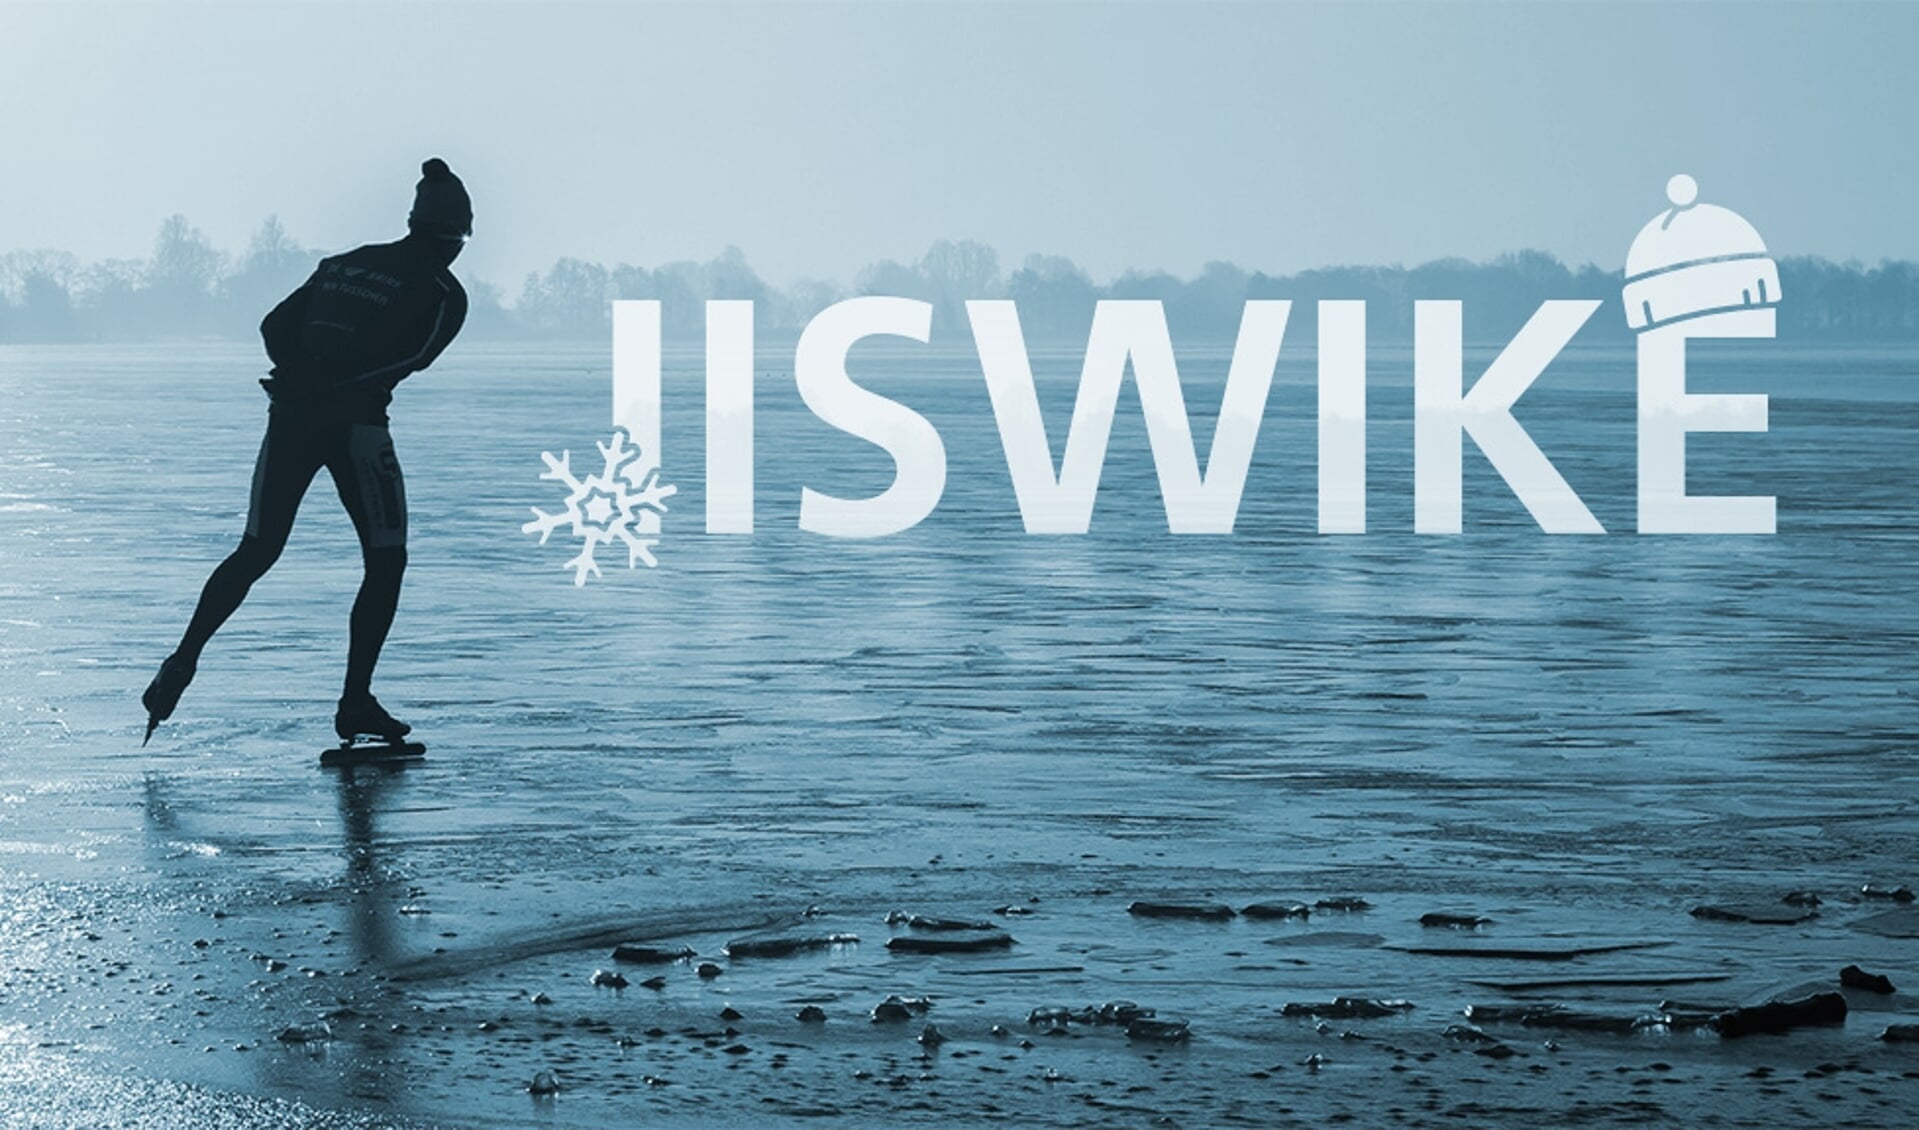 Tot en met zondag 2 februari is het 'IIswike' bij Omrop Fryslân. Maak in deze week kans op een kunstijsbaan voor 1 dag!